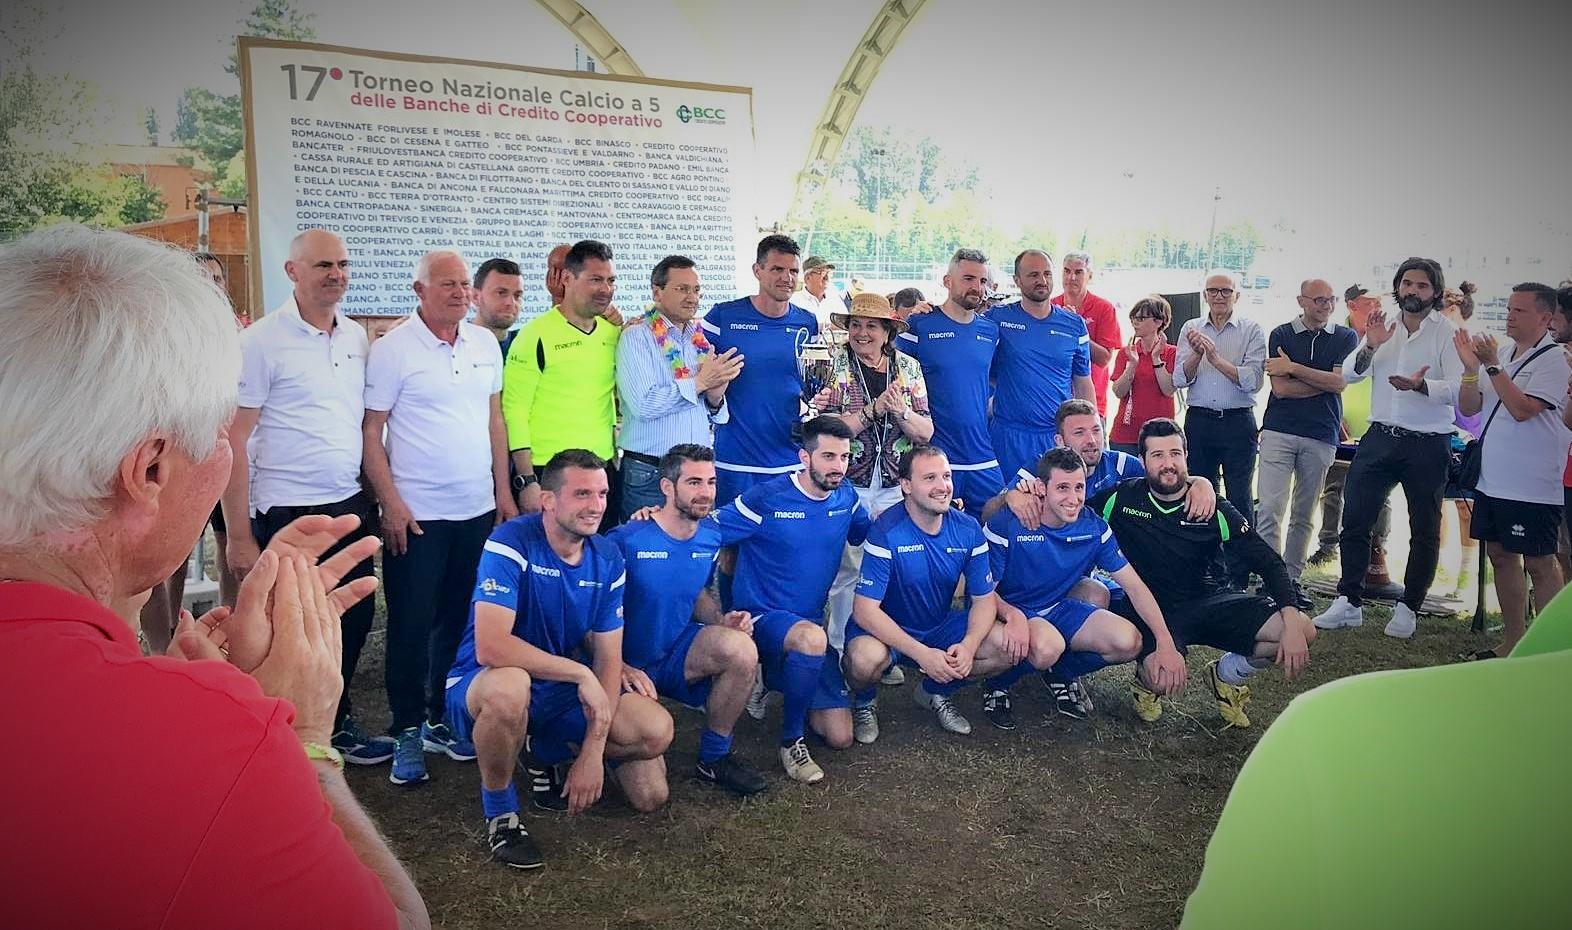 Lo spirito di squadra è stato espresso nel “17esimo torneo nazionale di calcio a 5 delle Banche di Credito Cooperativo” giocato lo scorso fine settimana a Goito, in provincia di Mantova.